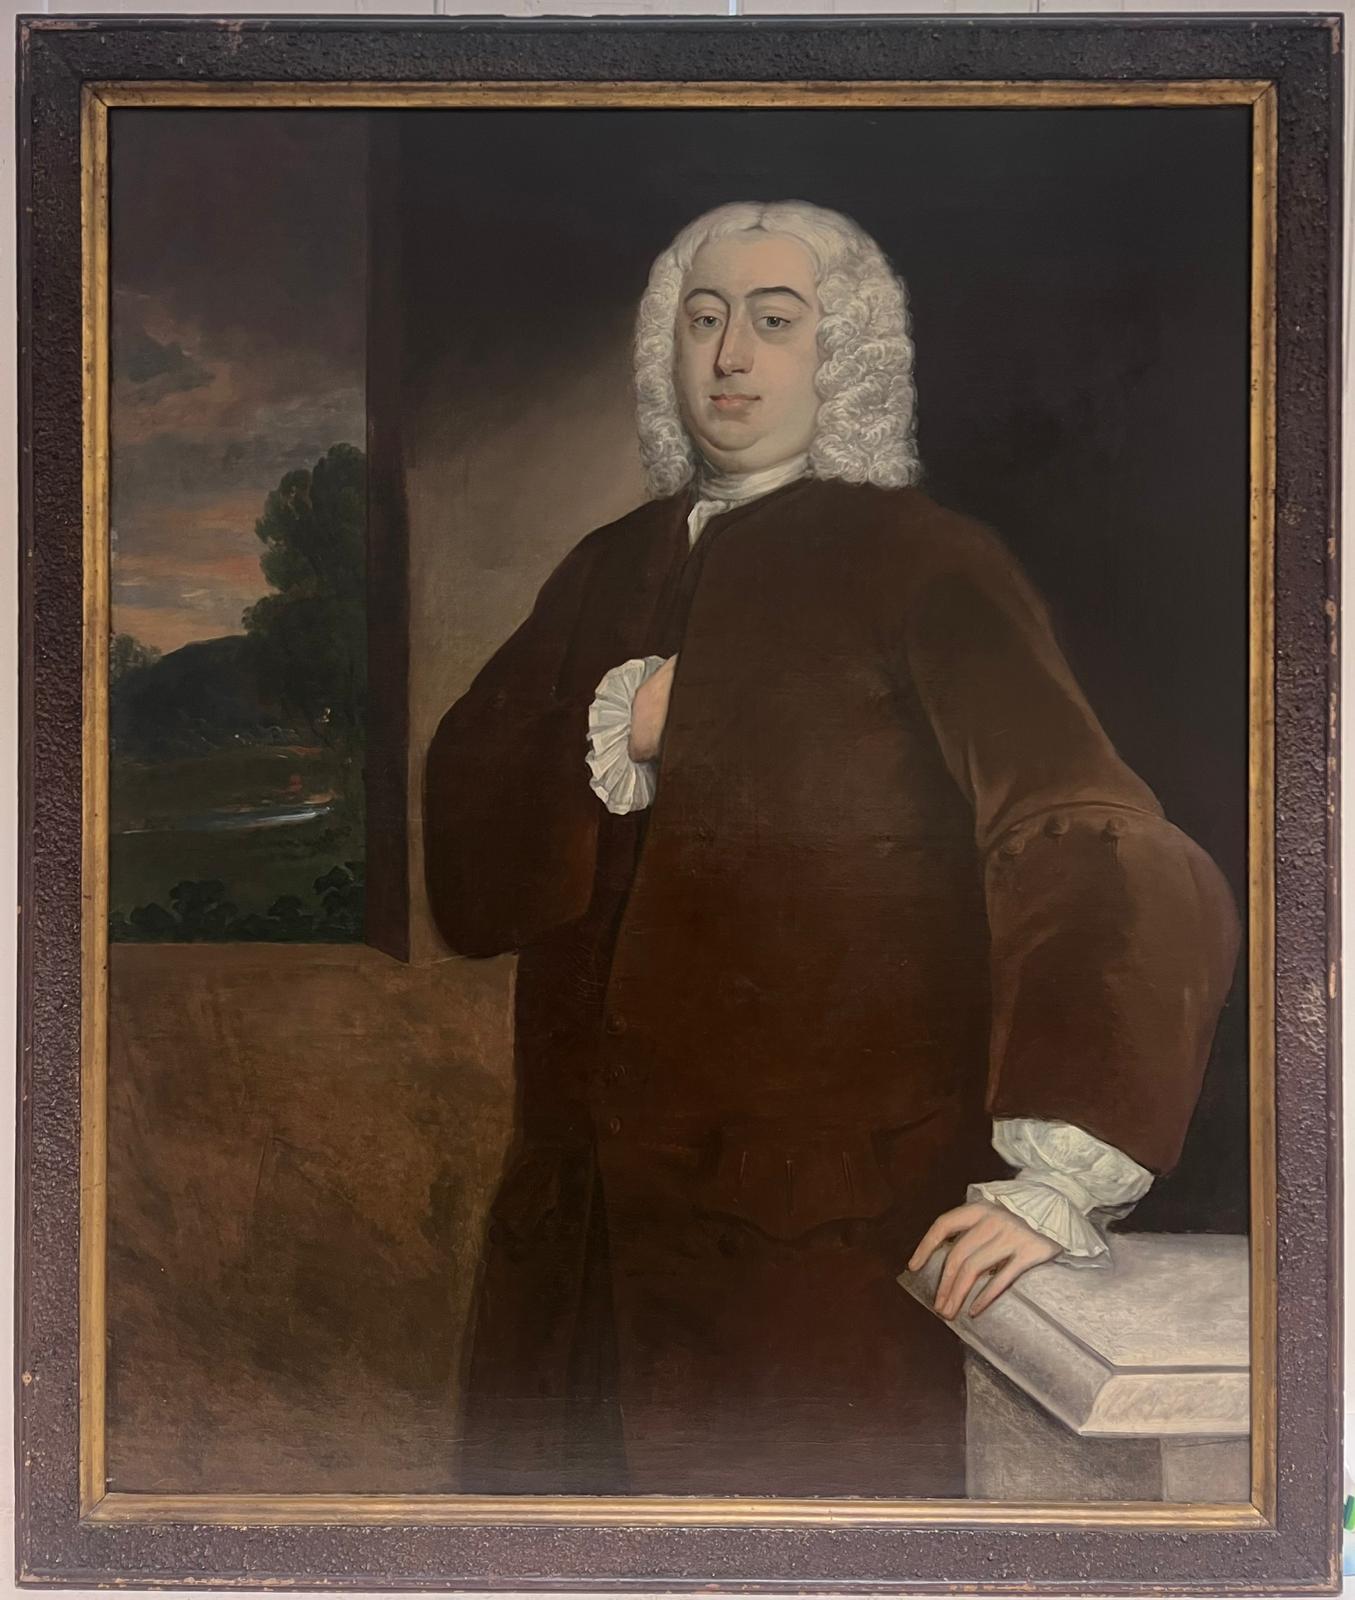 Portrait d'un gentilhomme aristocrate anglais du 18e siècle Grande peinture à l'huile - Painting de Circle of Thomas Hudson (1701-1779) 